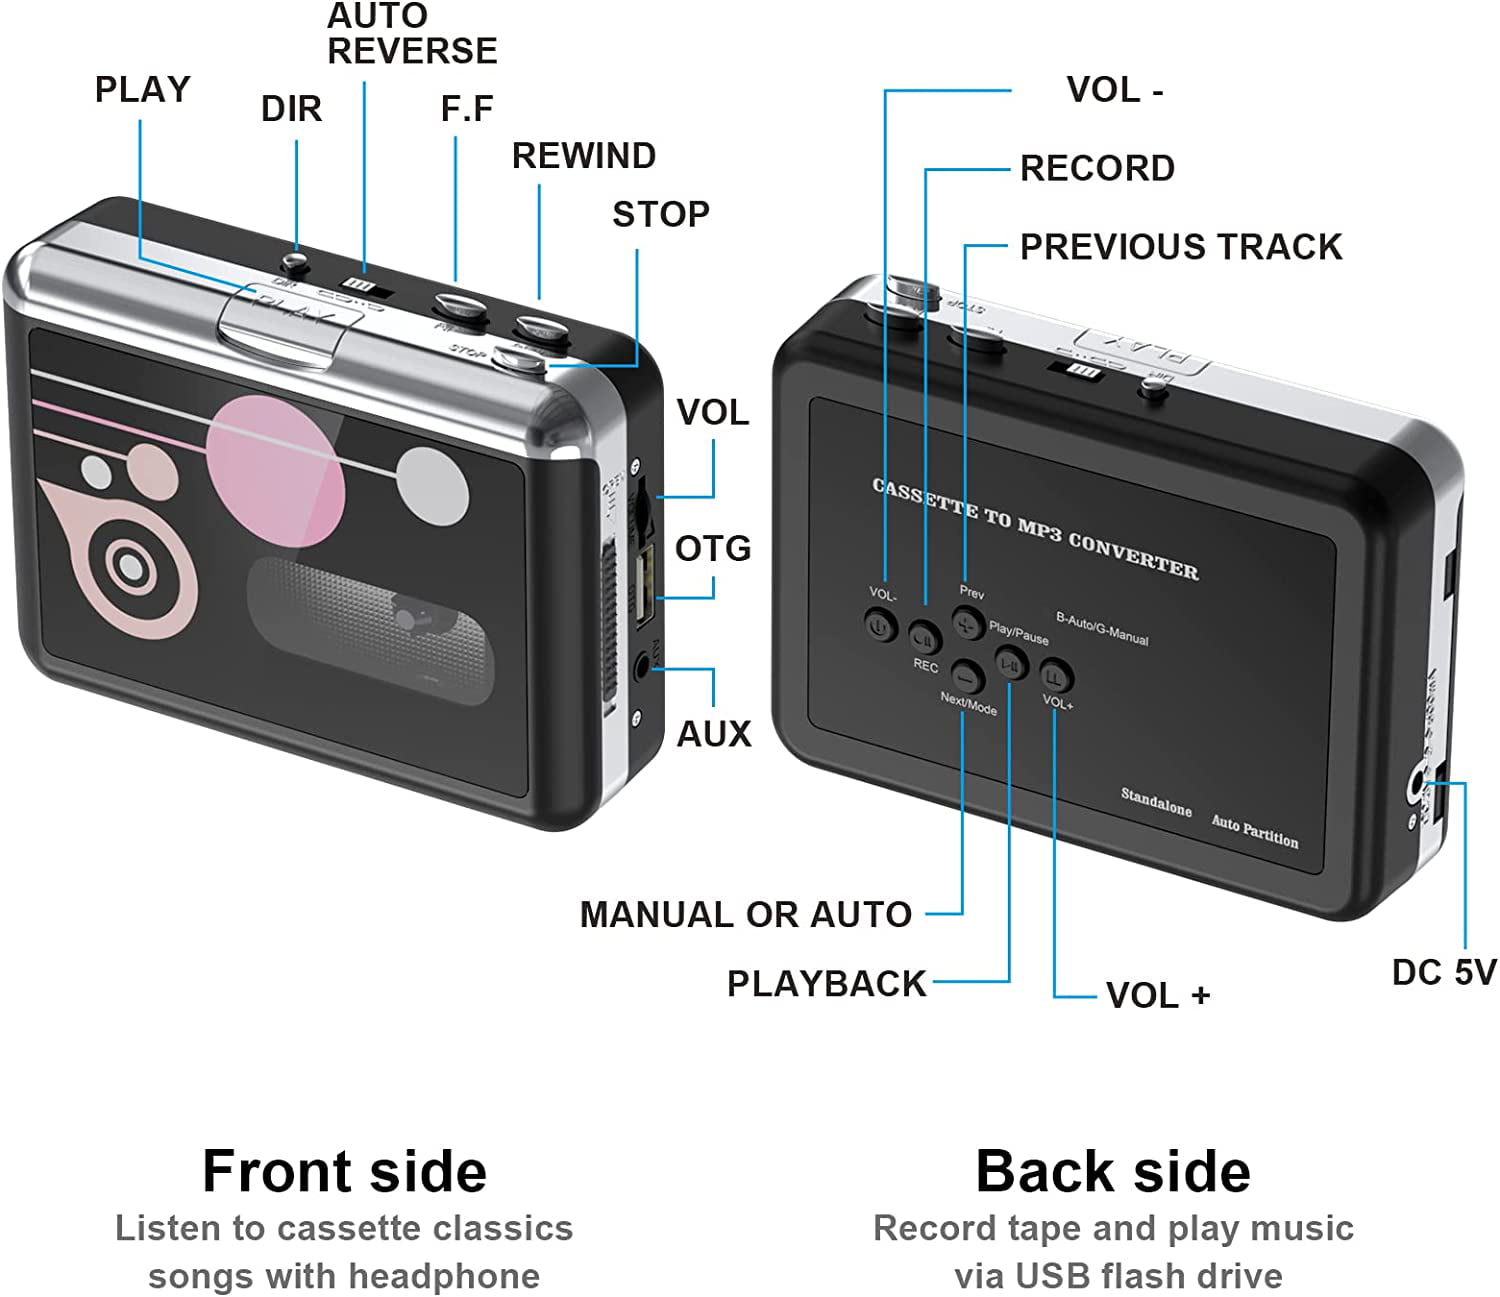 Rybozen Le convertisseur audio/vidéo USB 2.0 numérise et édite la